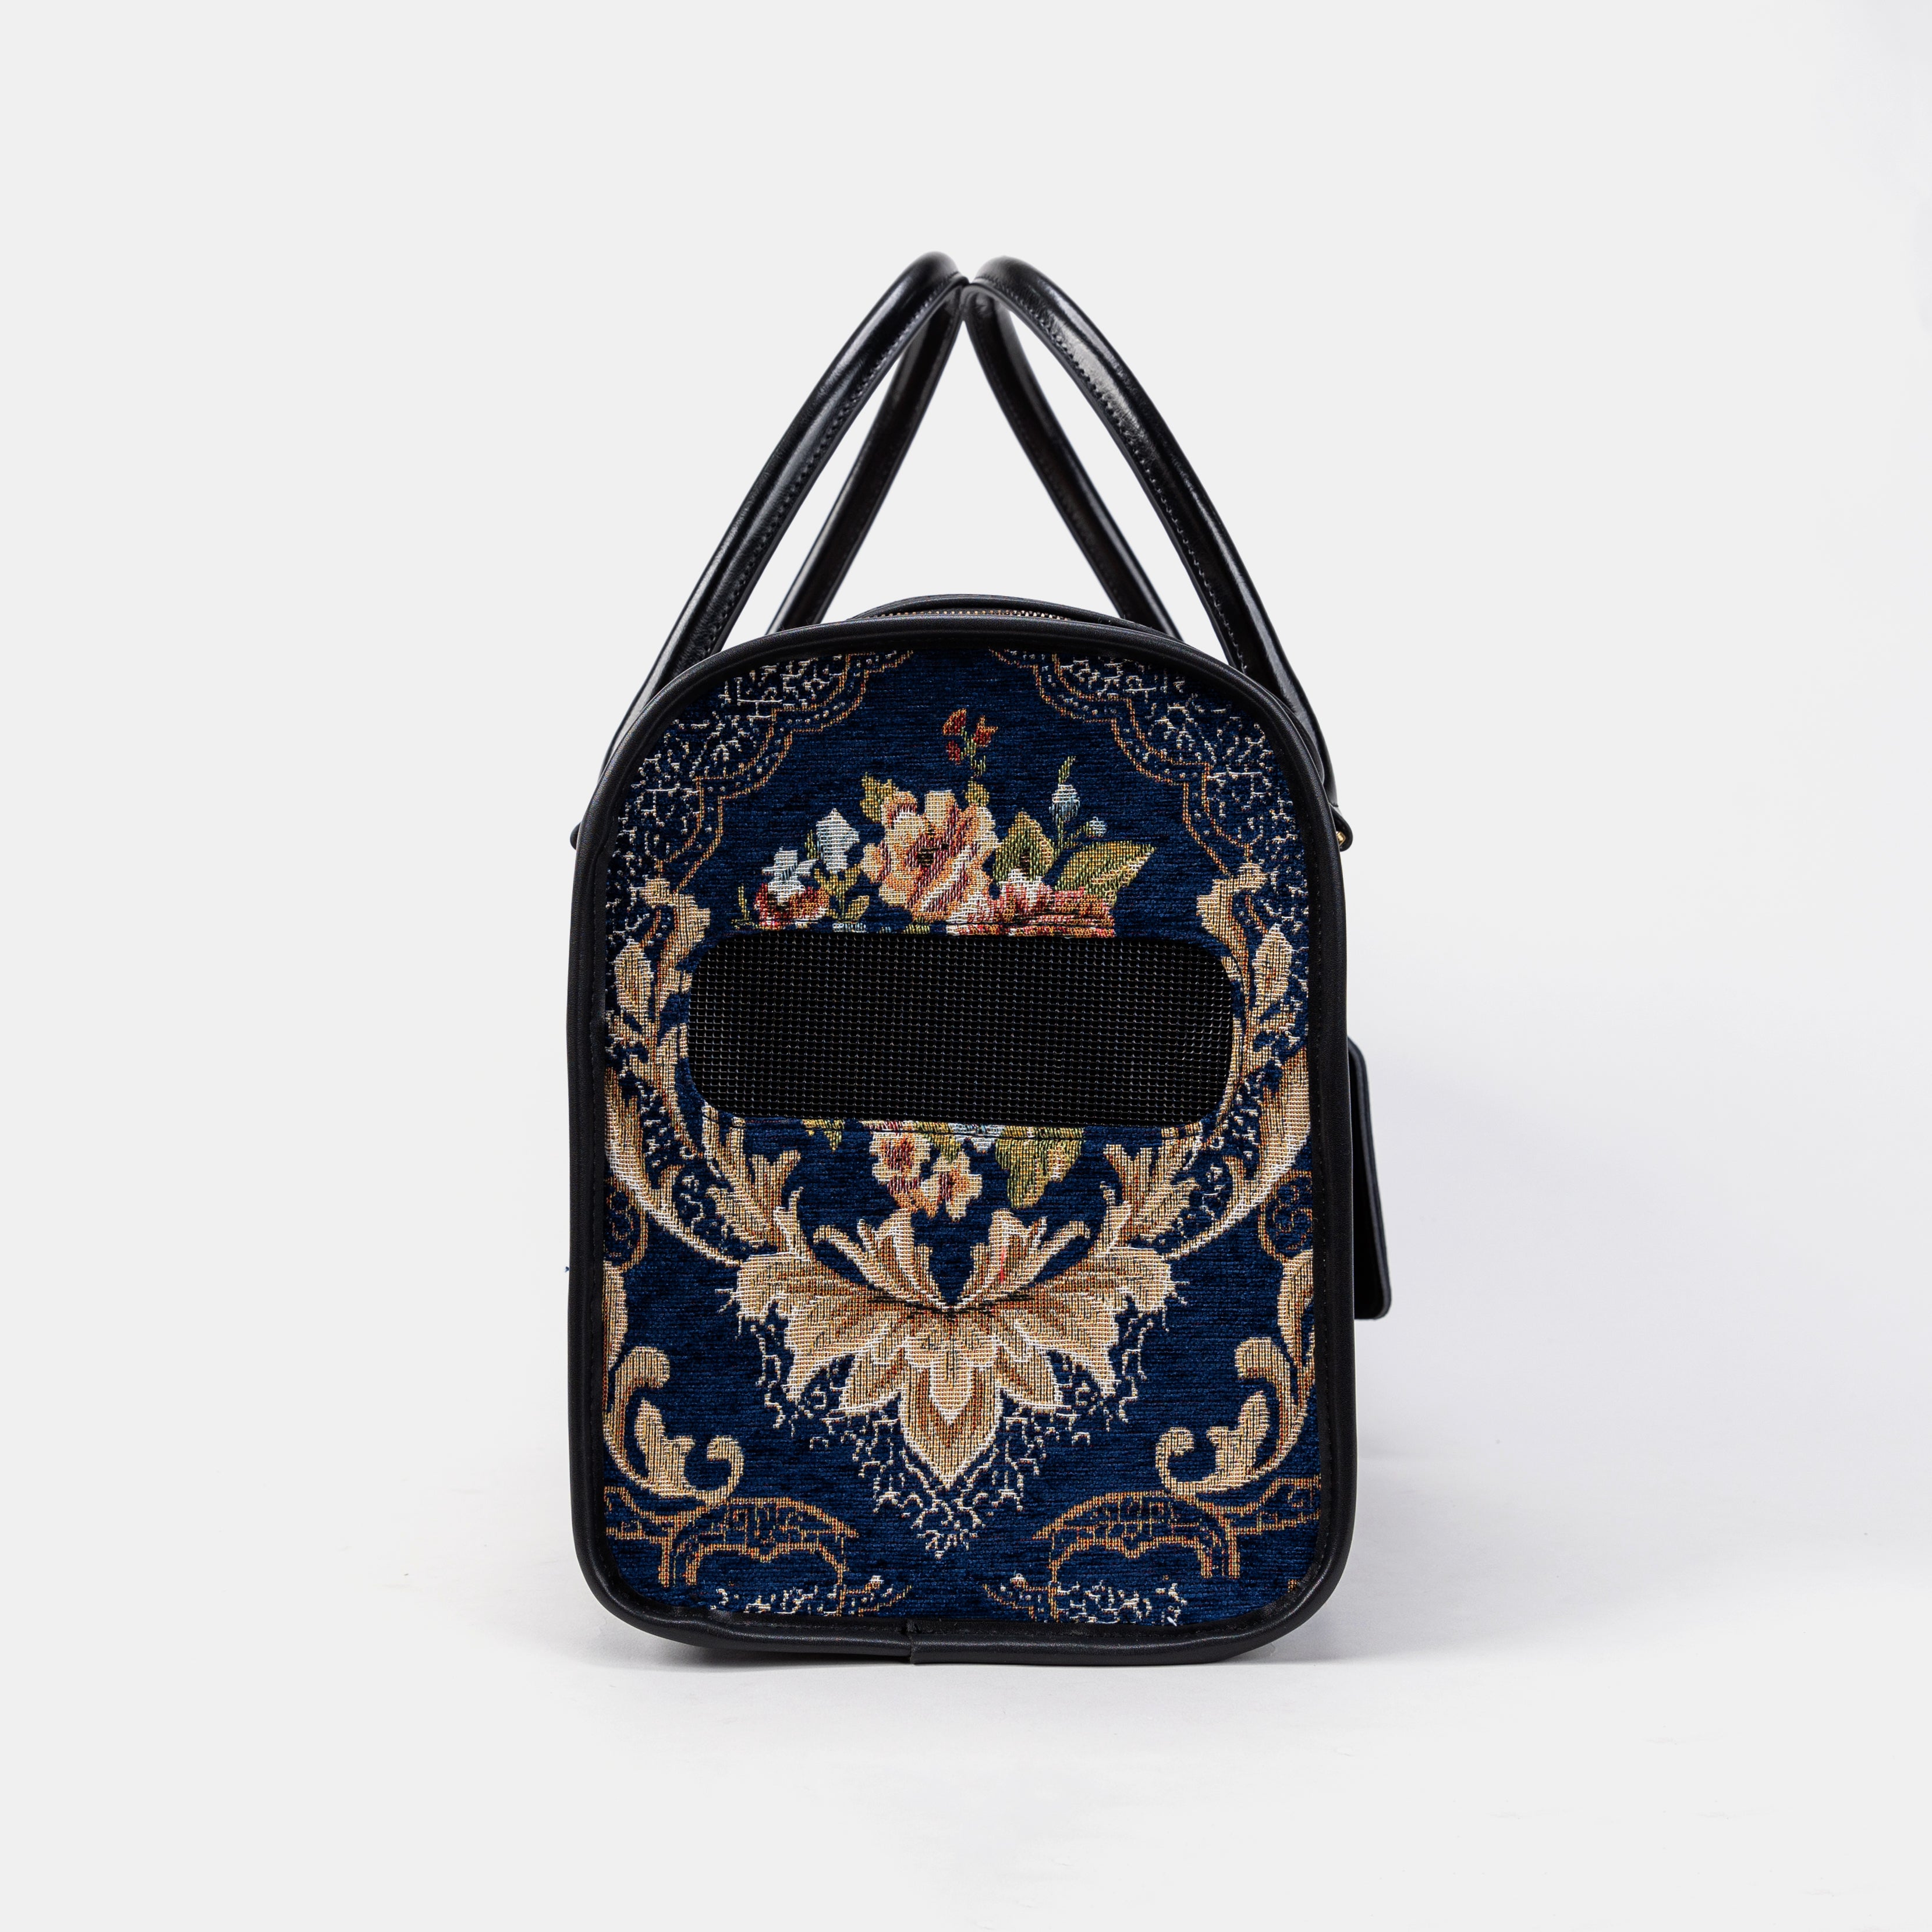 Travel Dog Carrier Bag Floral Blue Side Mesh